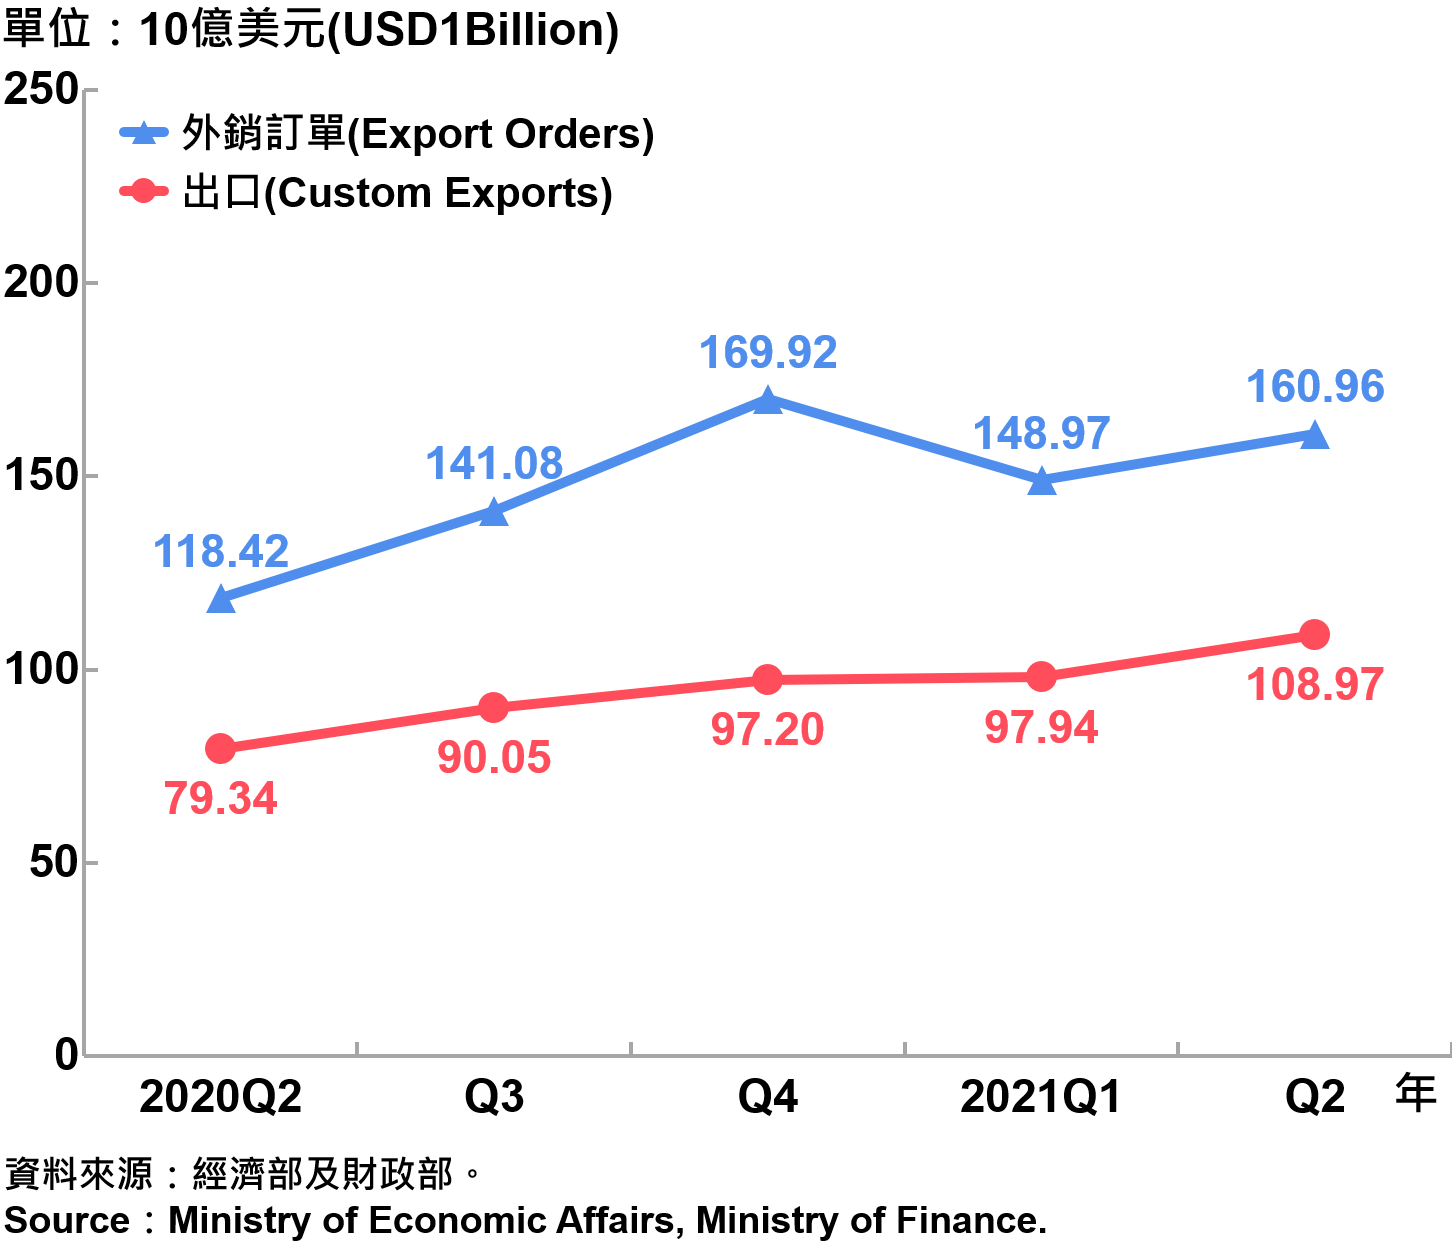 臺灣海關出口與外銷訂單 Custom Export and Export Orders in Taiwan